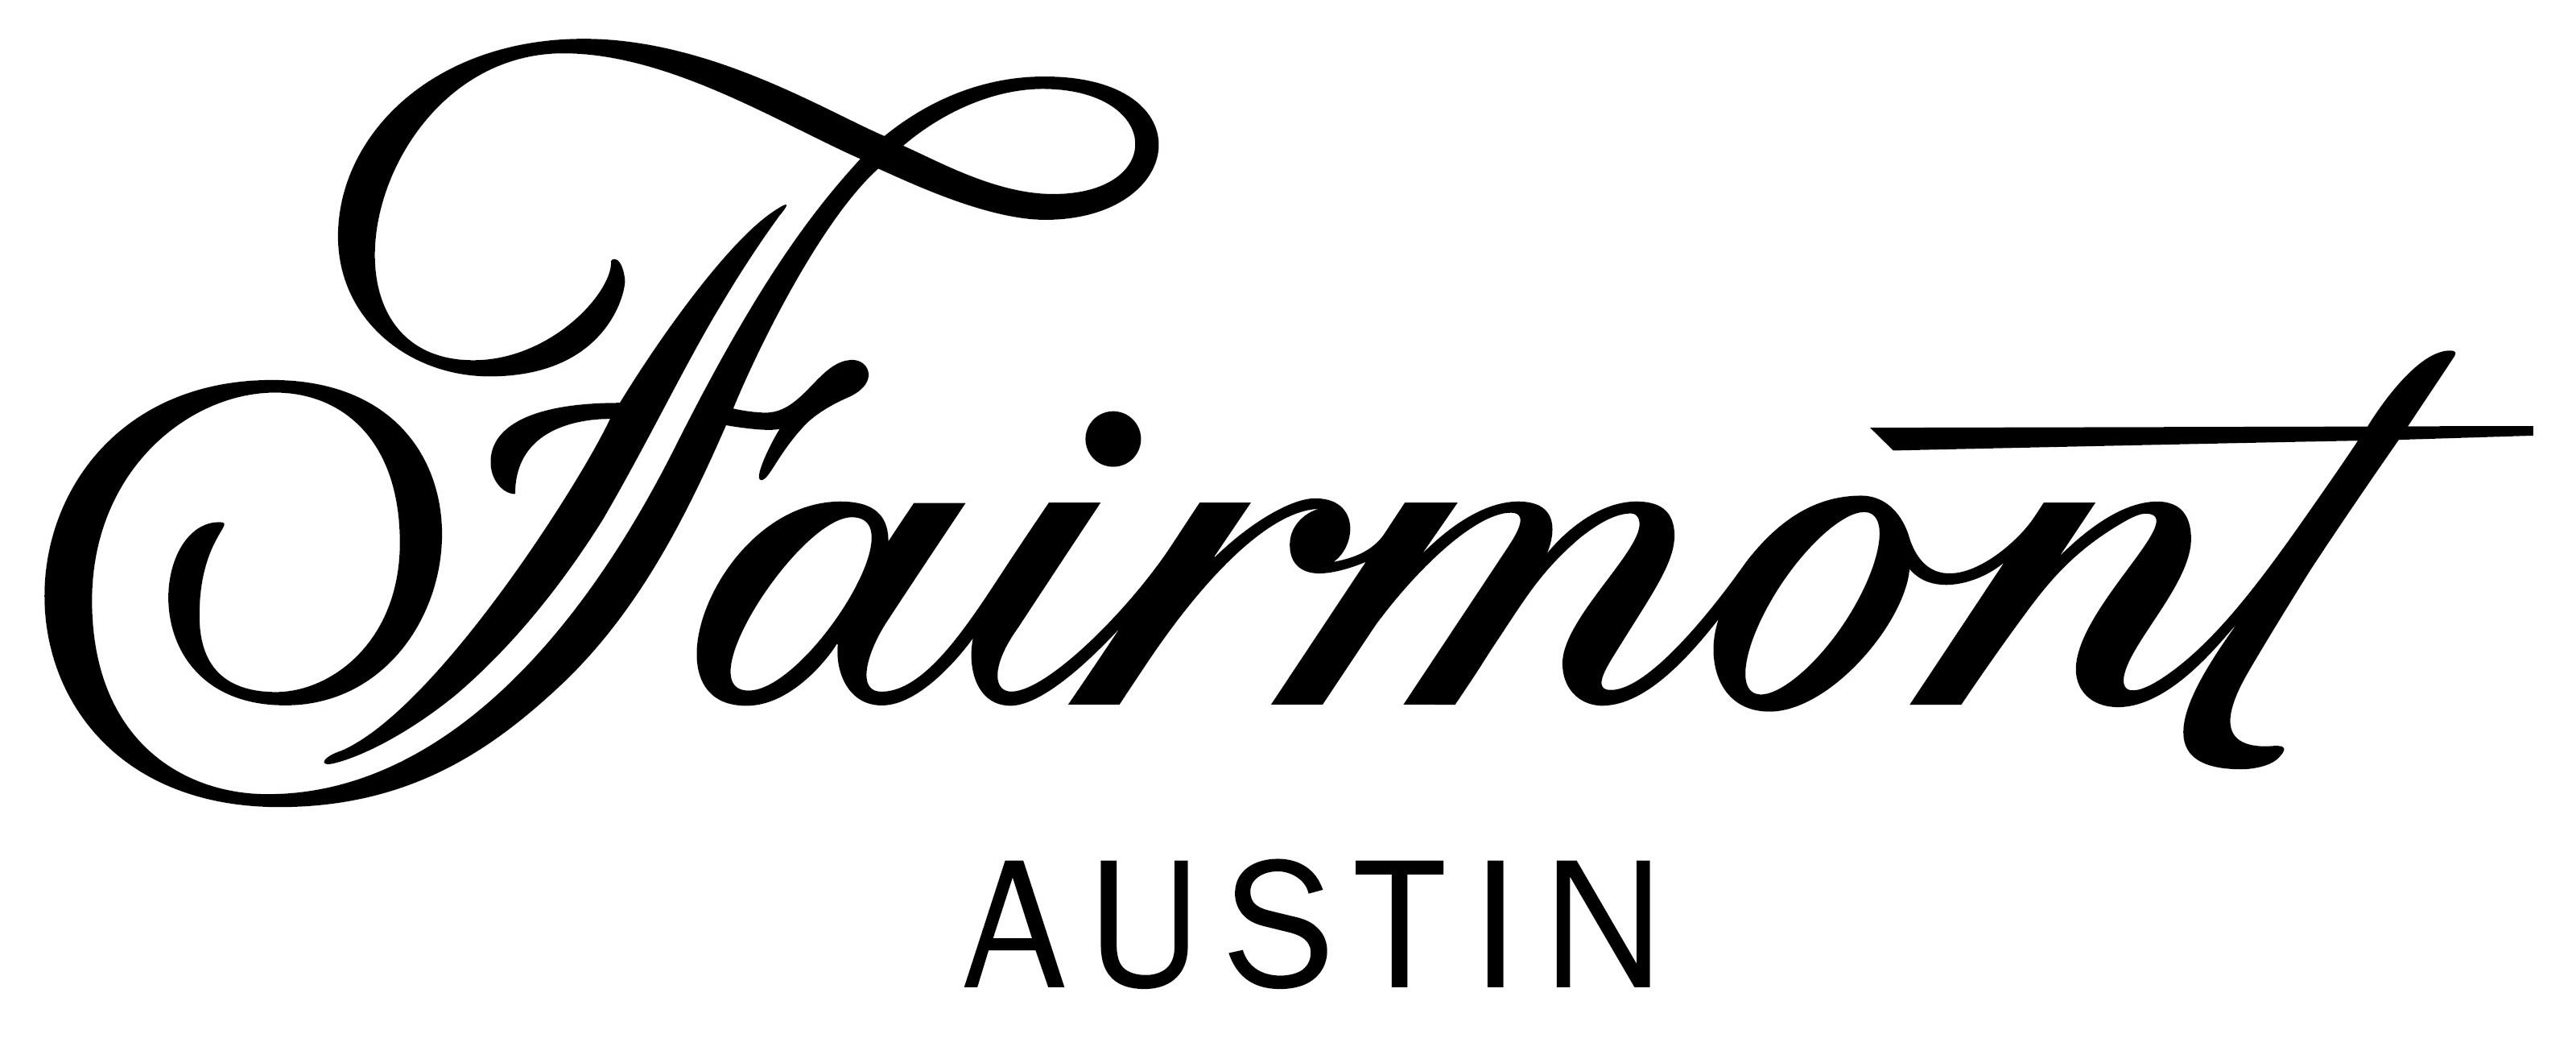 Fairmont Austin Logo - Thundercloud Subs - Austin Sub Sandwich Shop